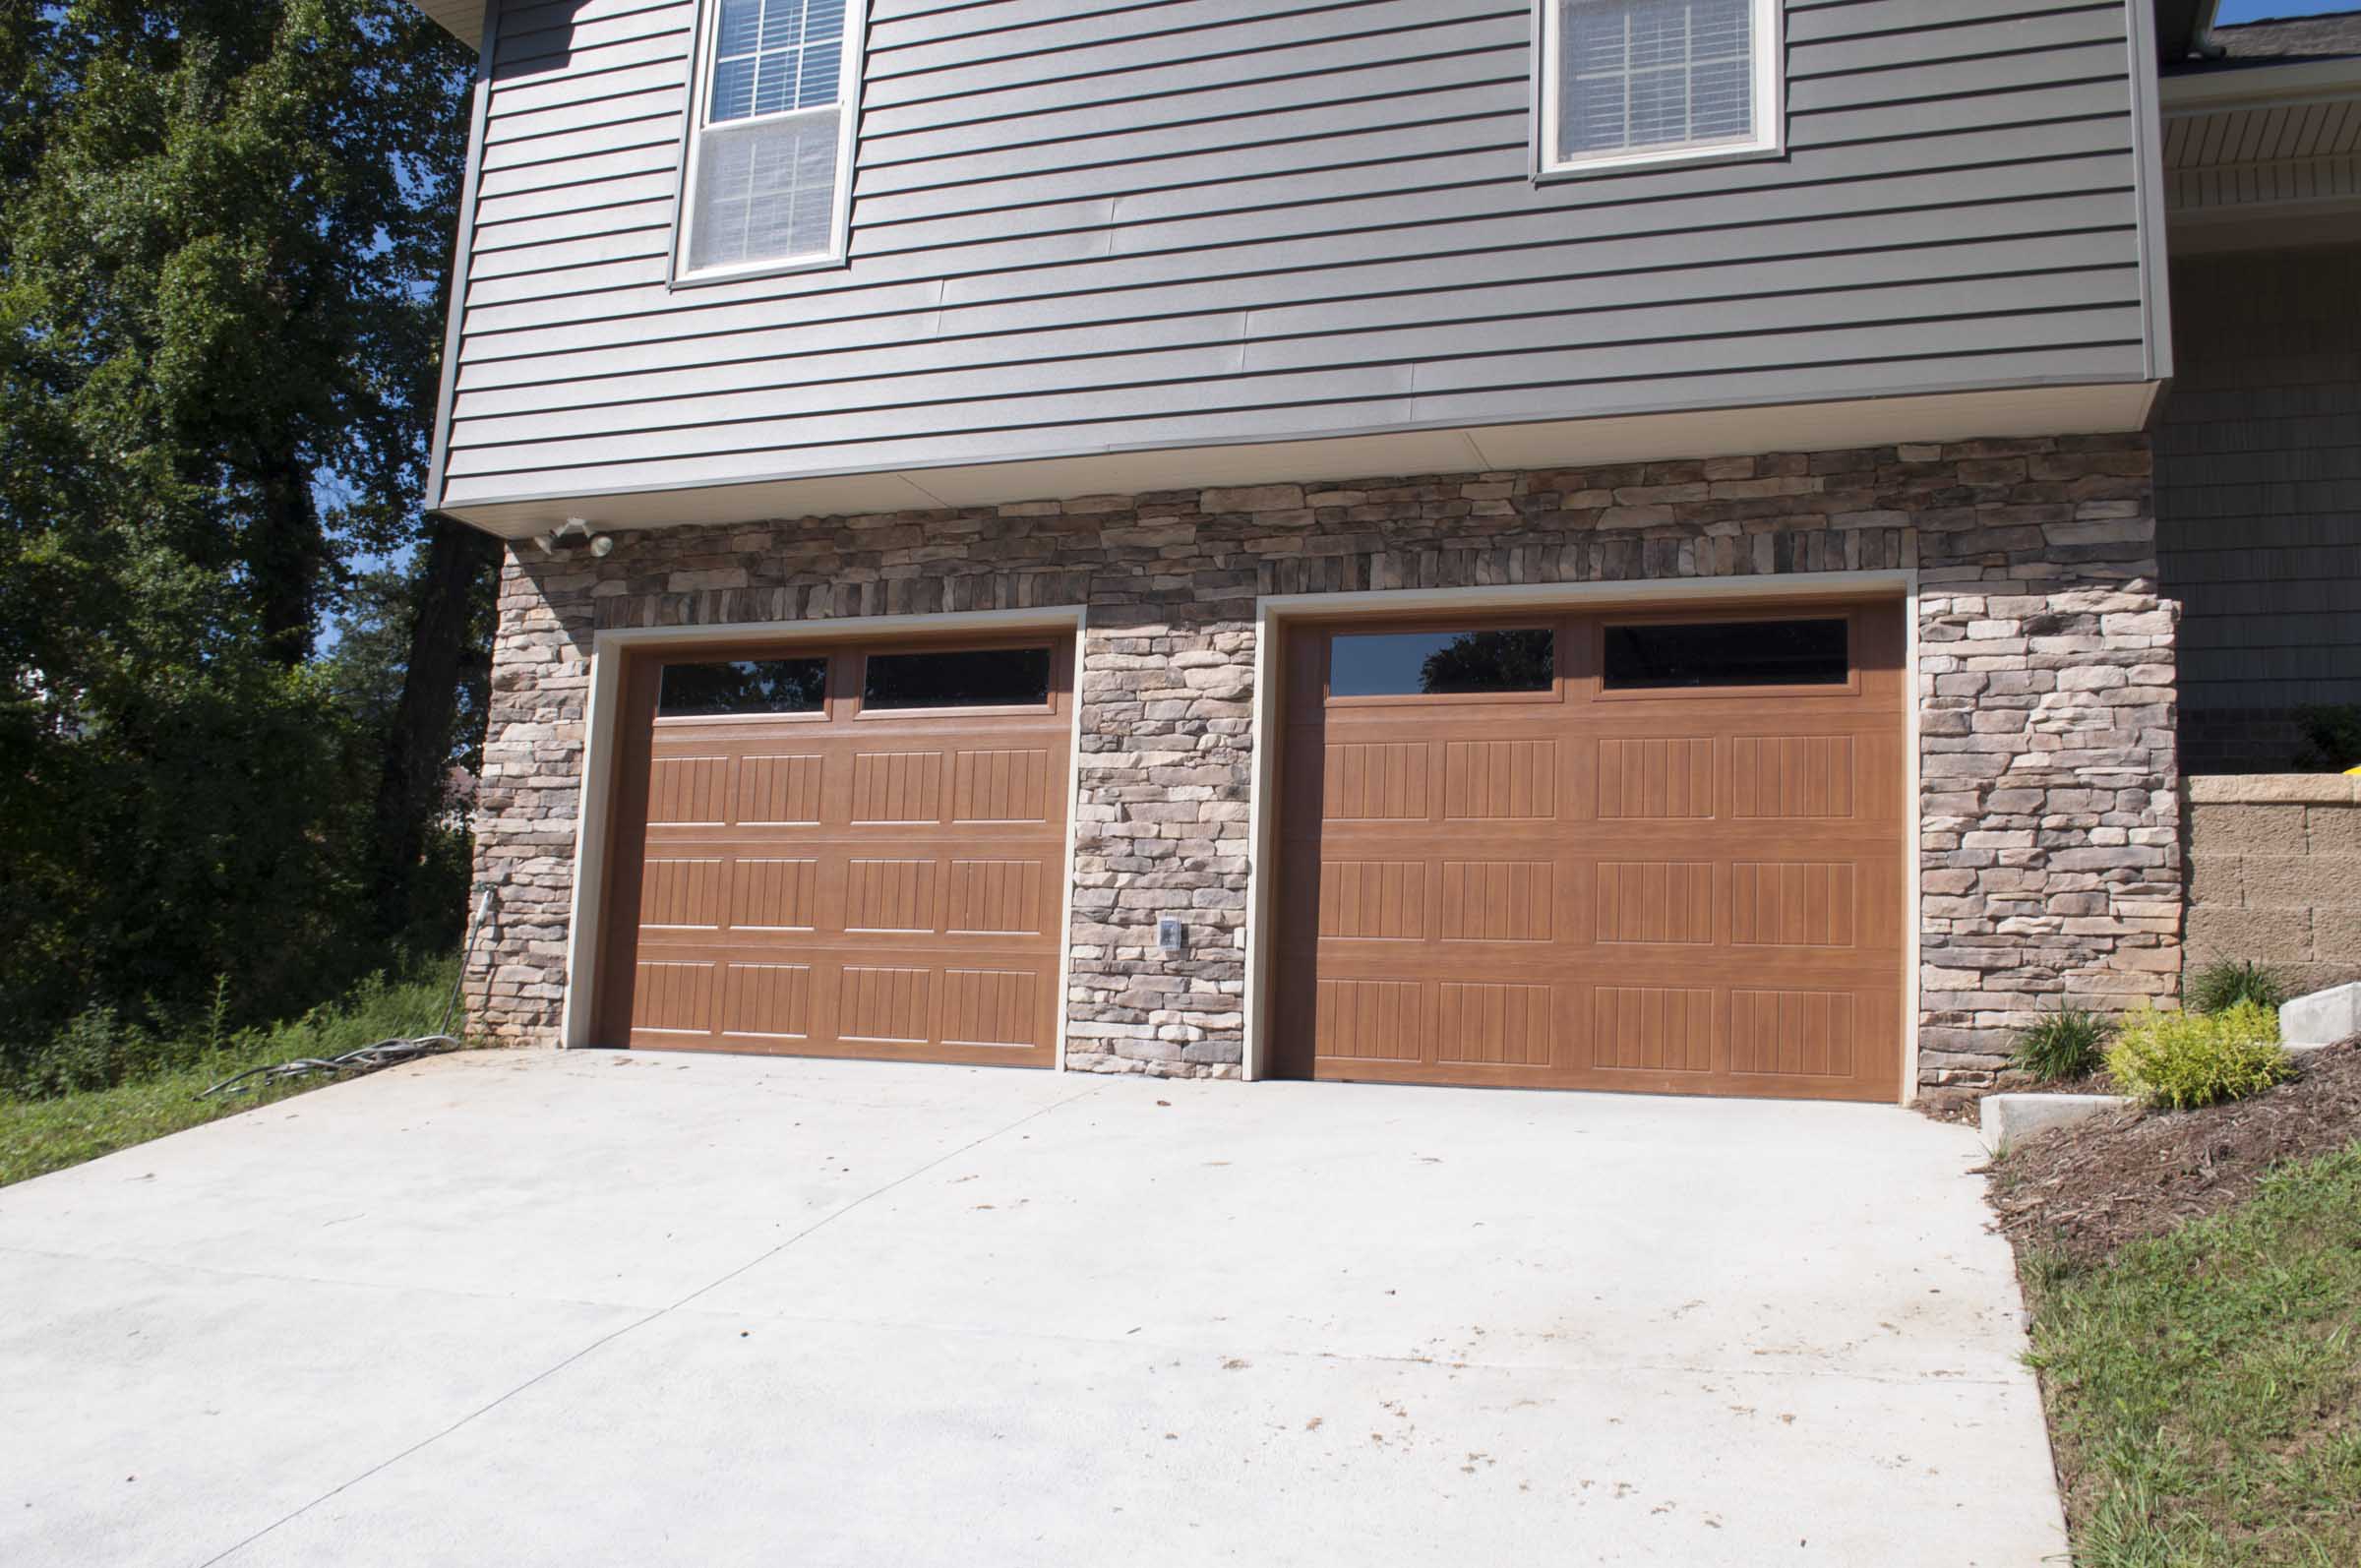 Knoxville Residential Garage Door Projects - Overhead Door Company of